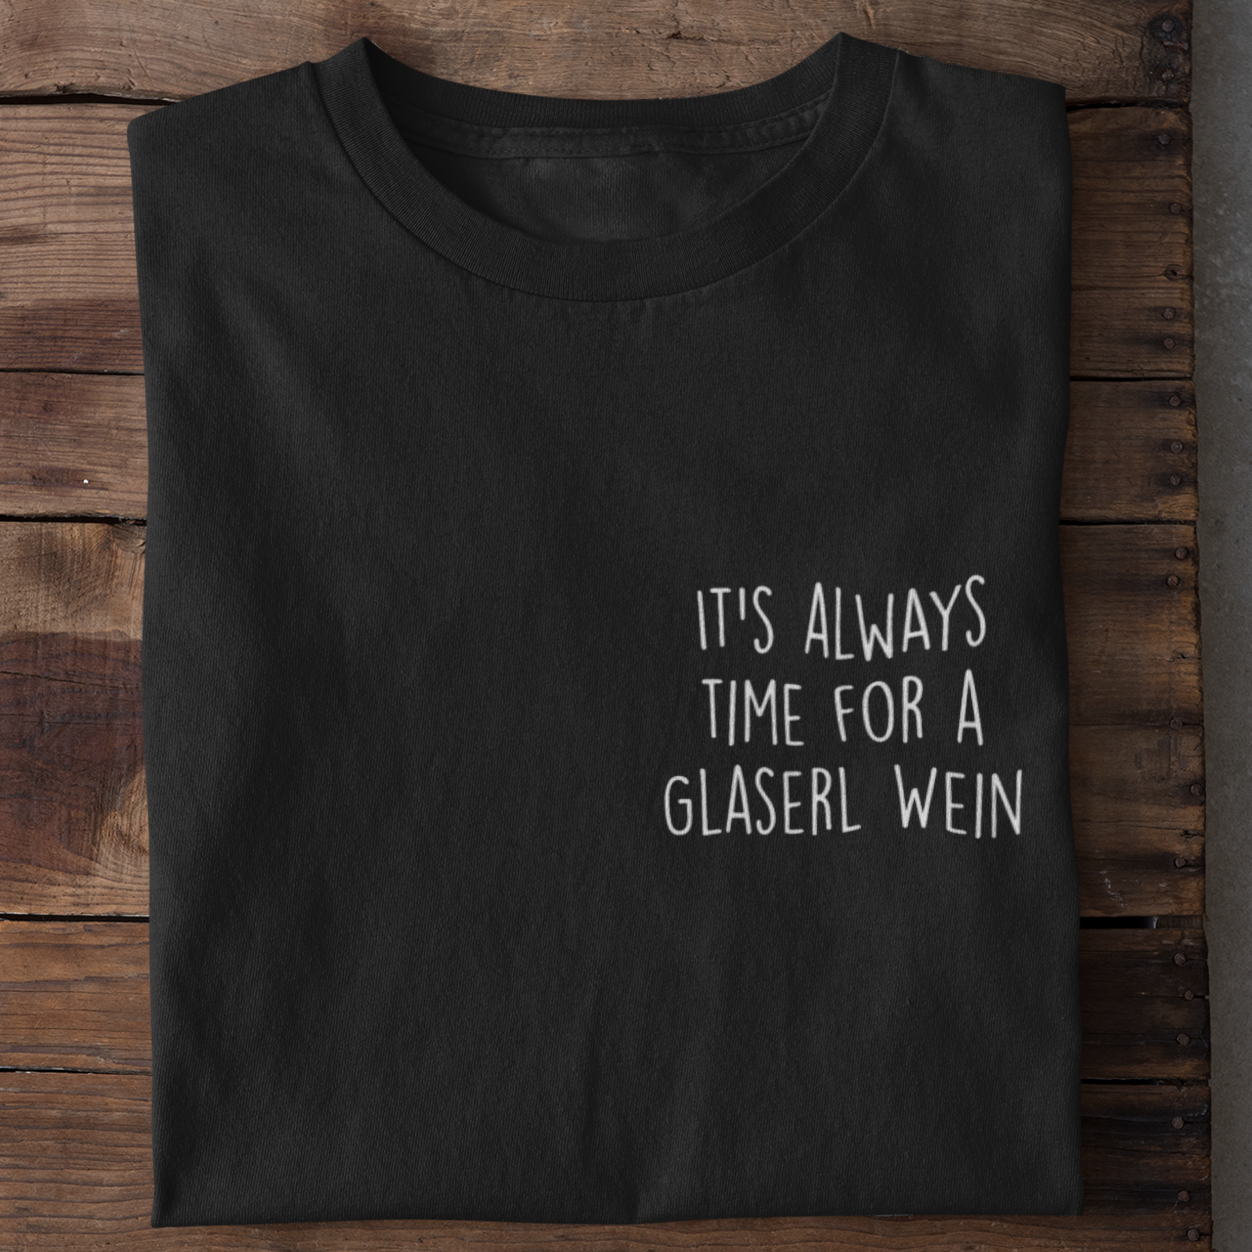 Time for a Glaserl Wein - Premium Shirt Herren - Weinspirits